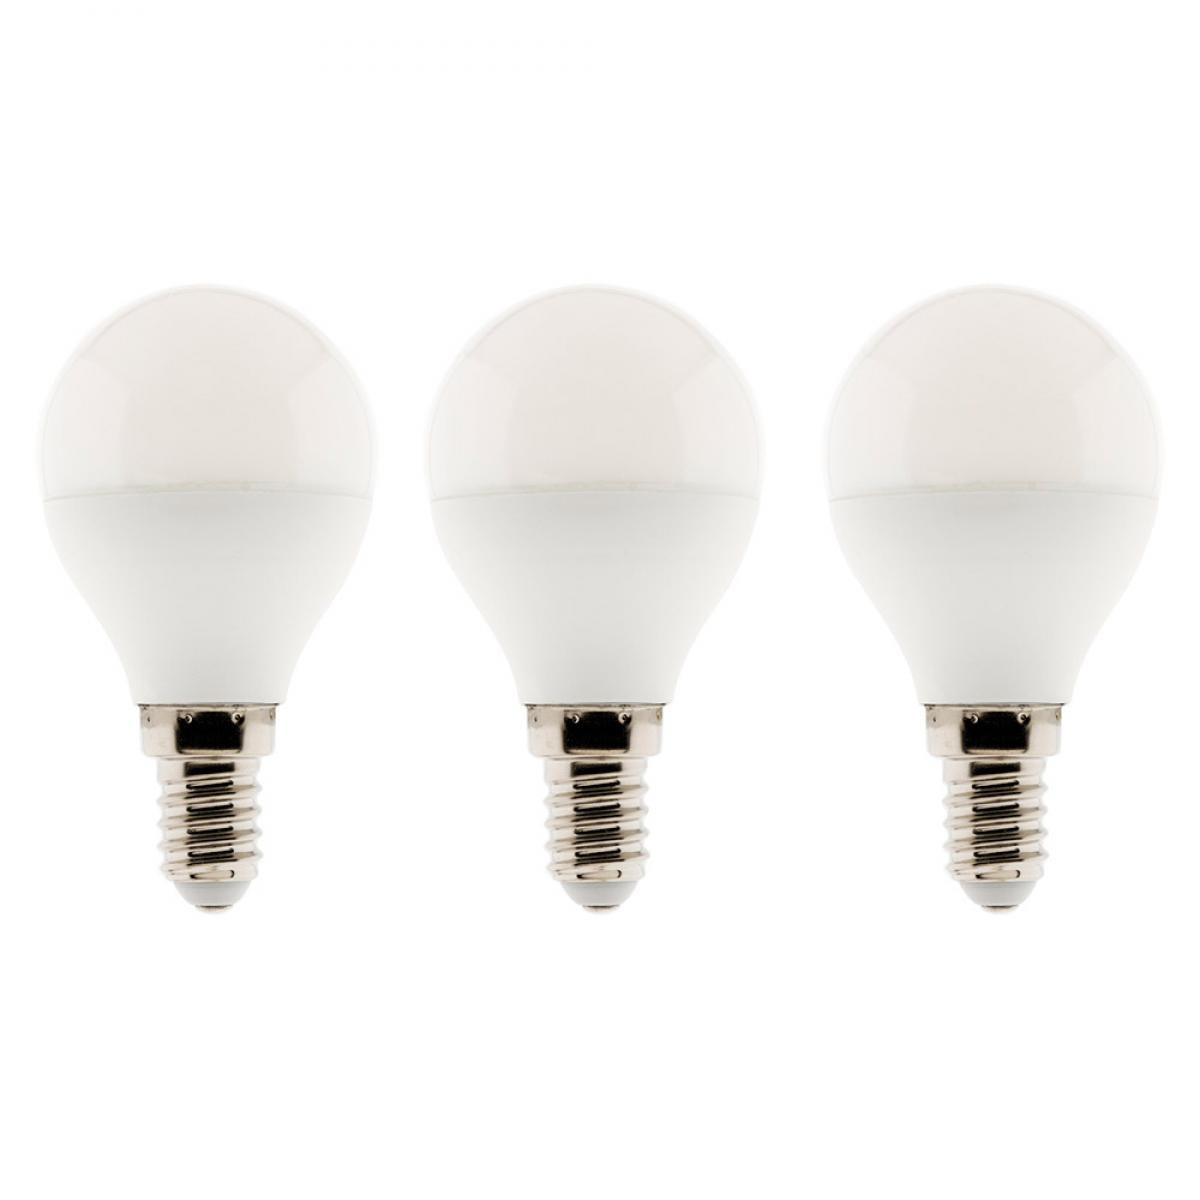 Elexity - Lot de 3 ampoules LED sphériques 5,2W E14 470lm 2700K (blanc chaud) - Ampoules LED